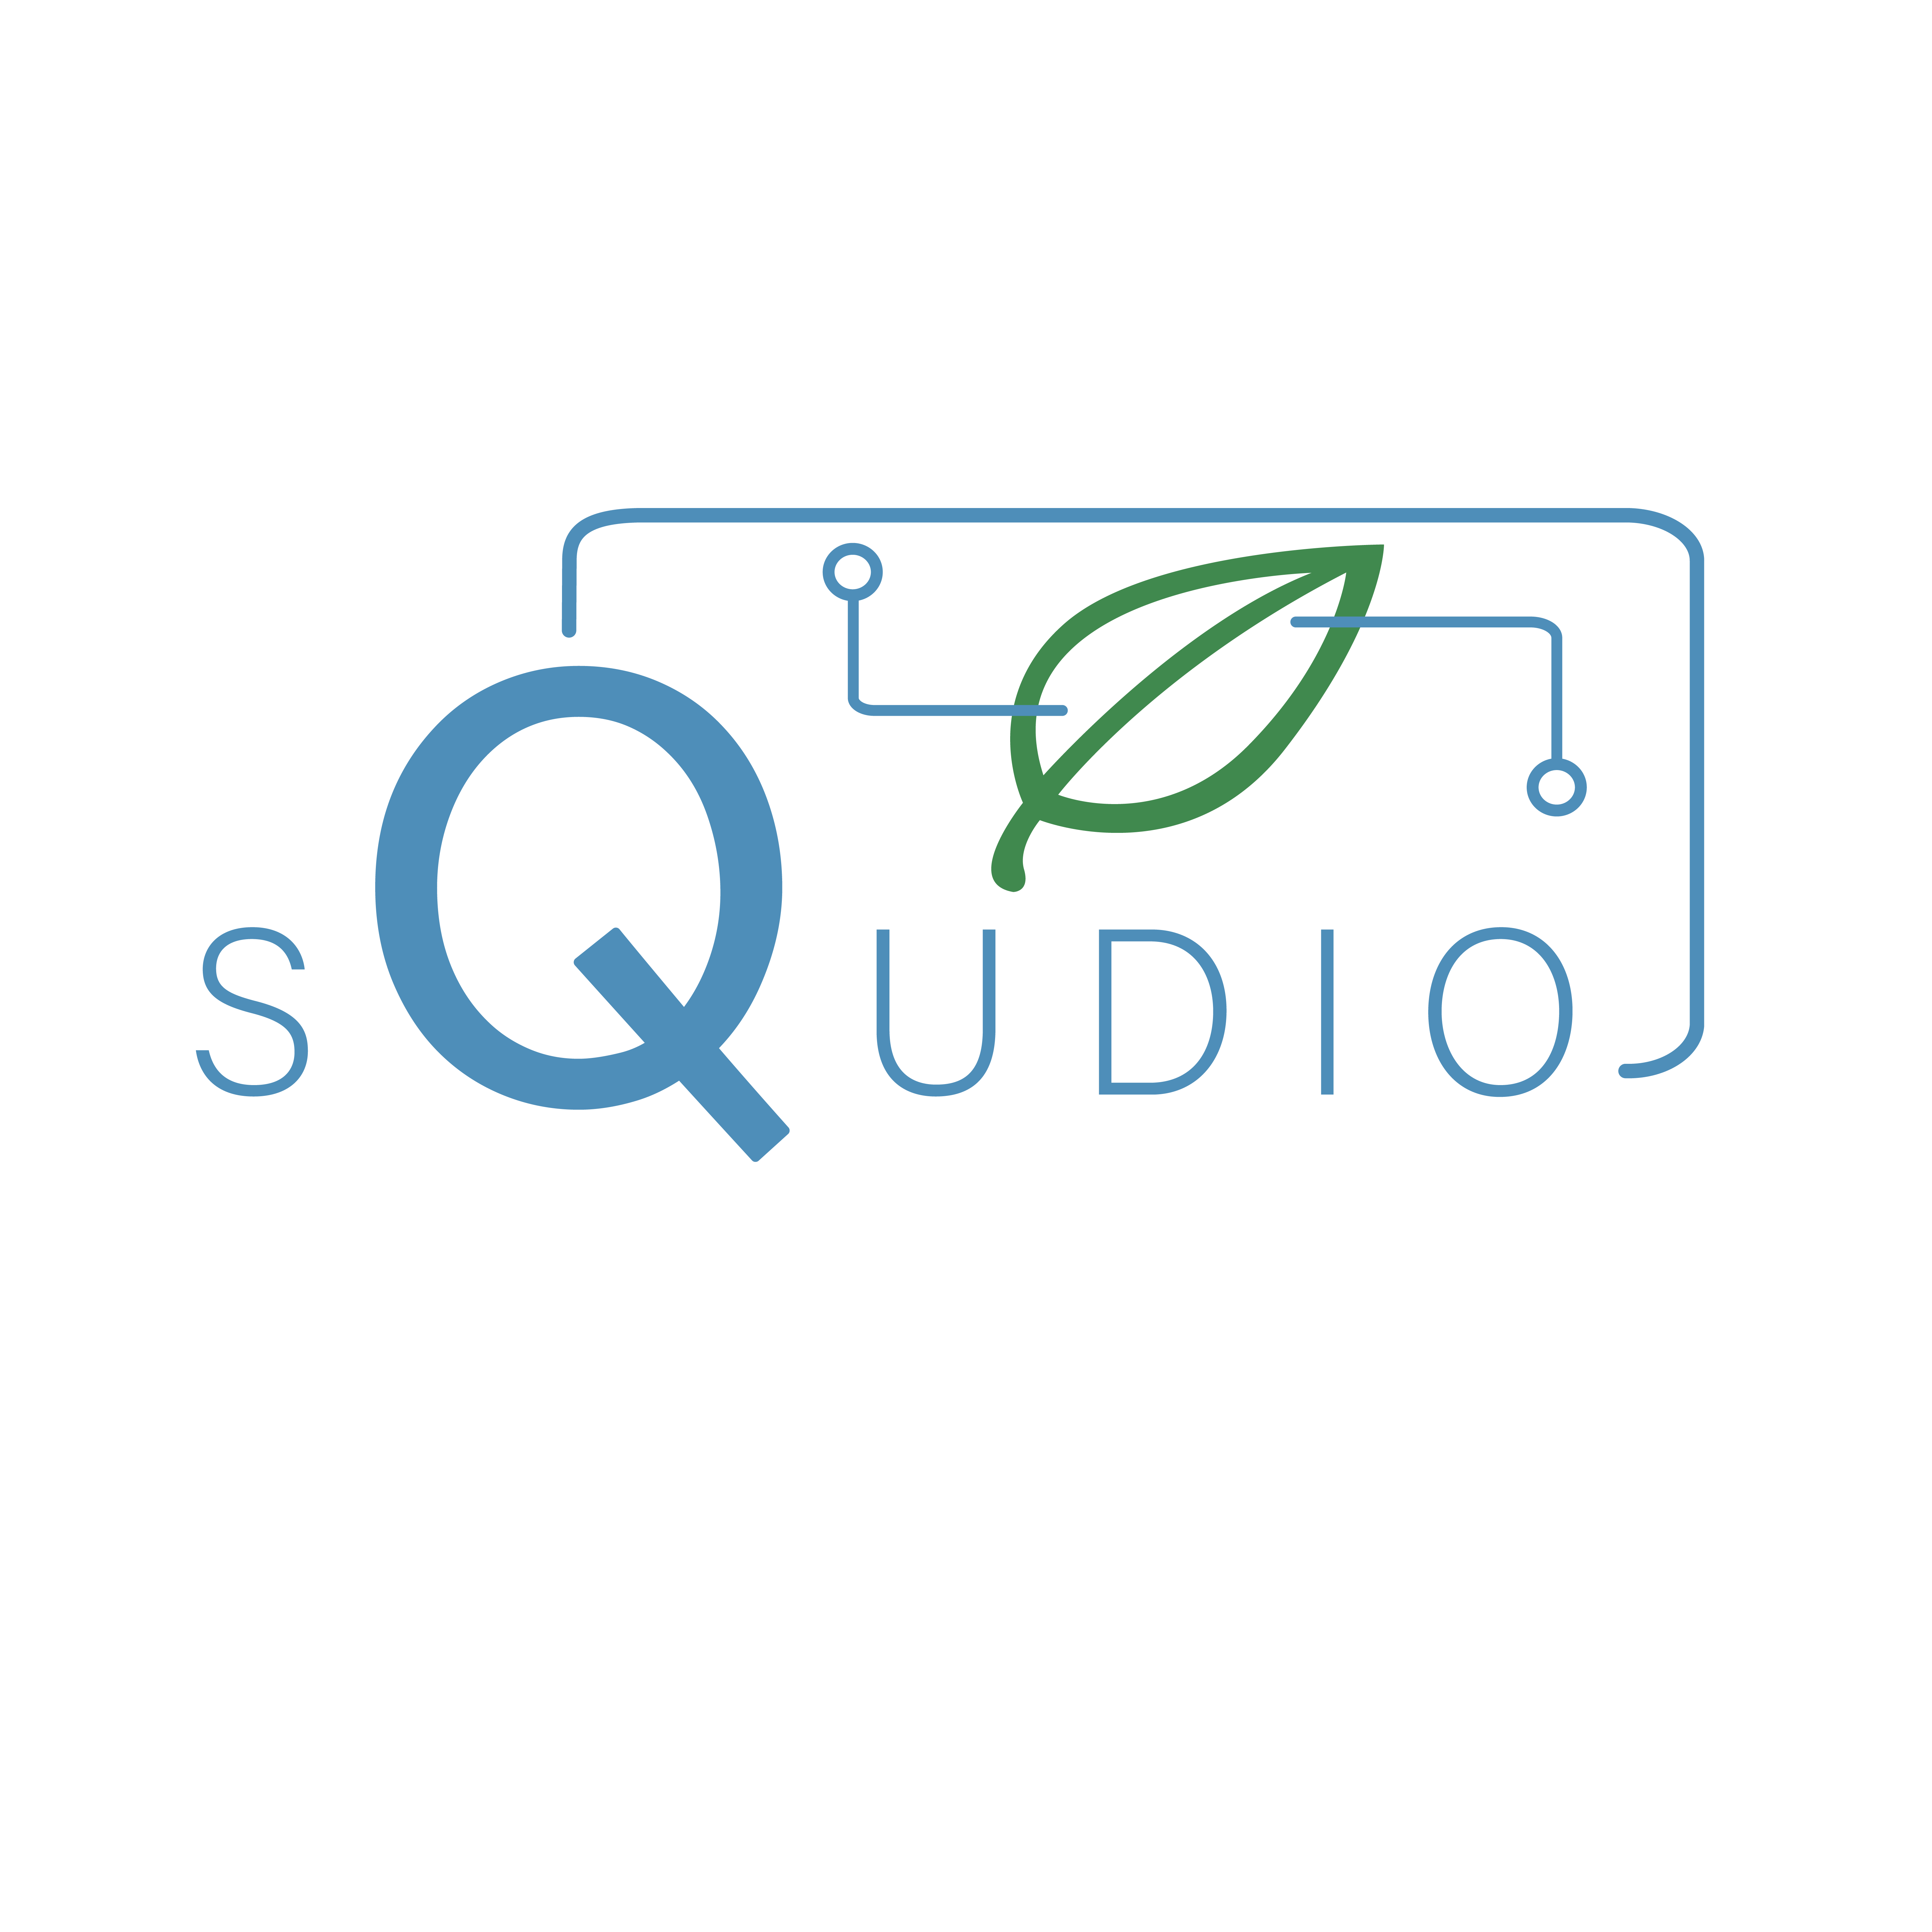 squdio-logo-laag_Tekengebied-1